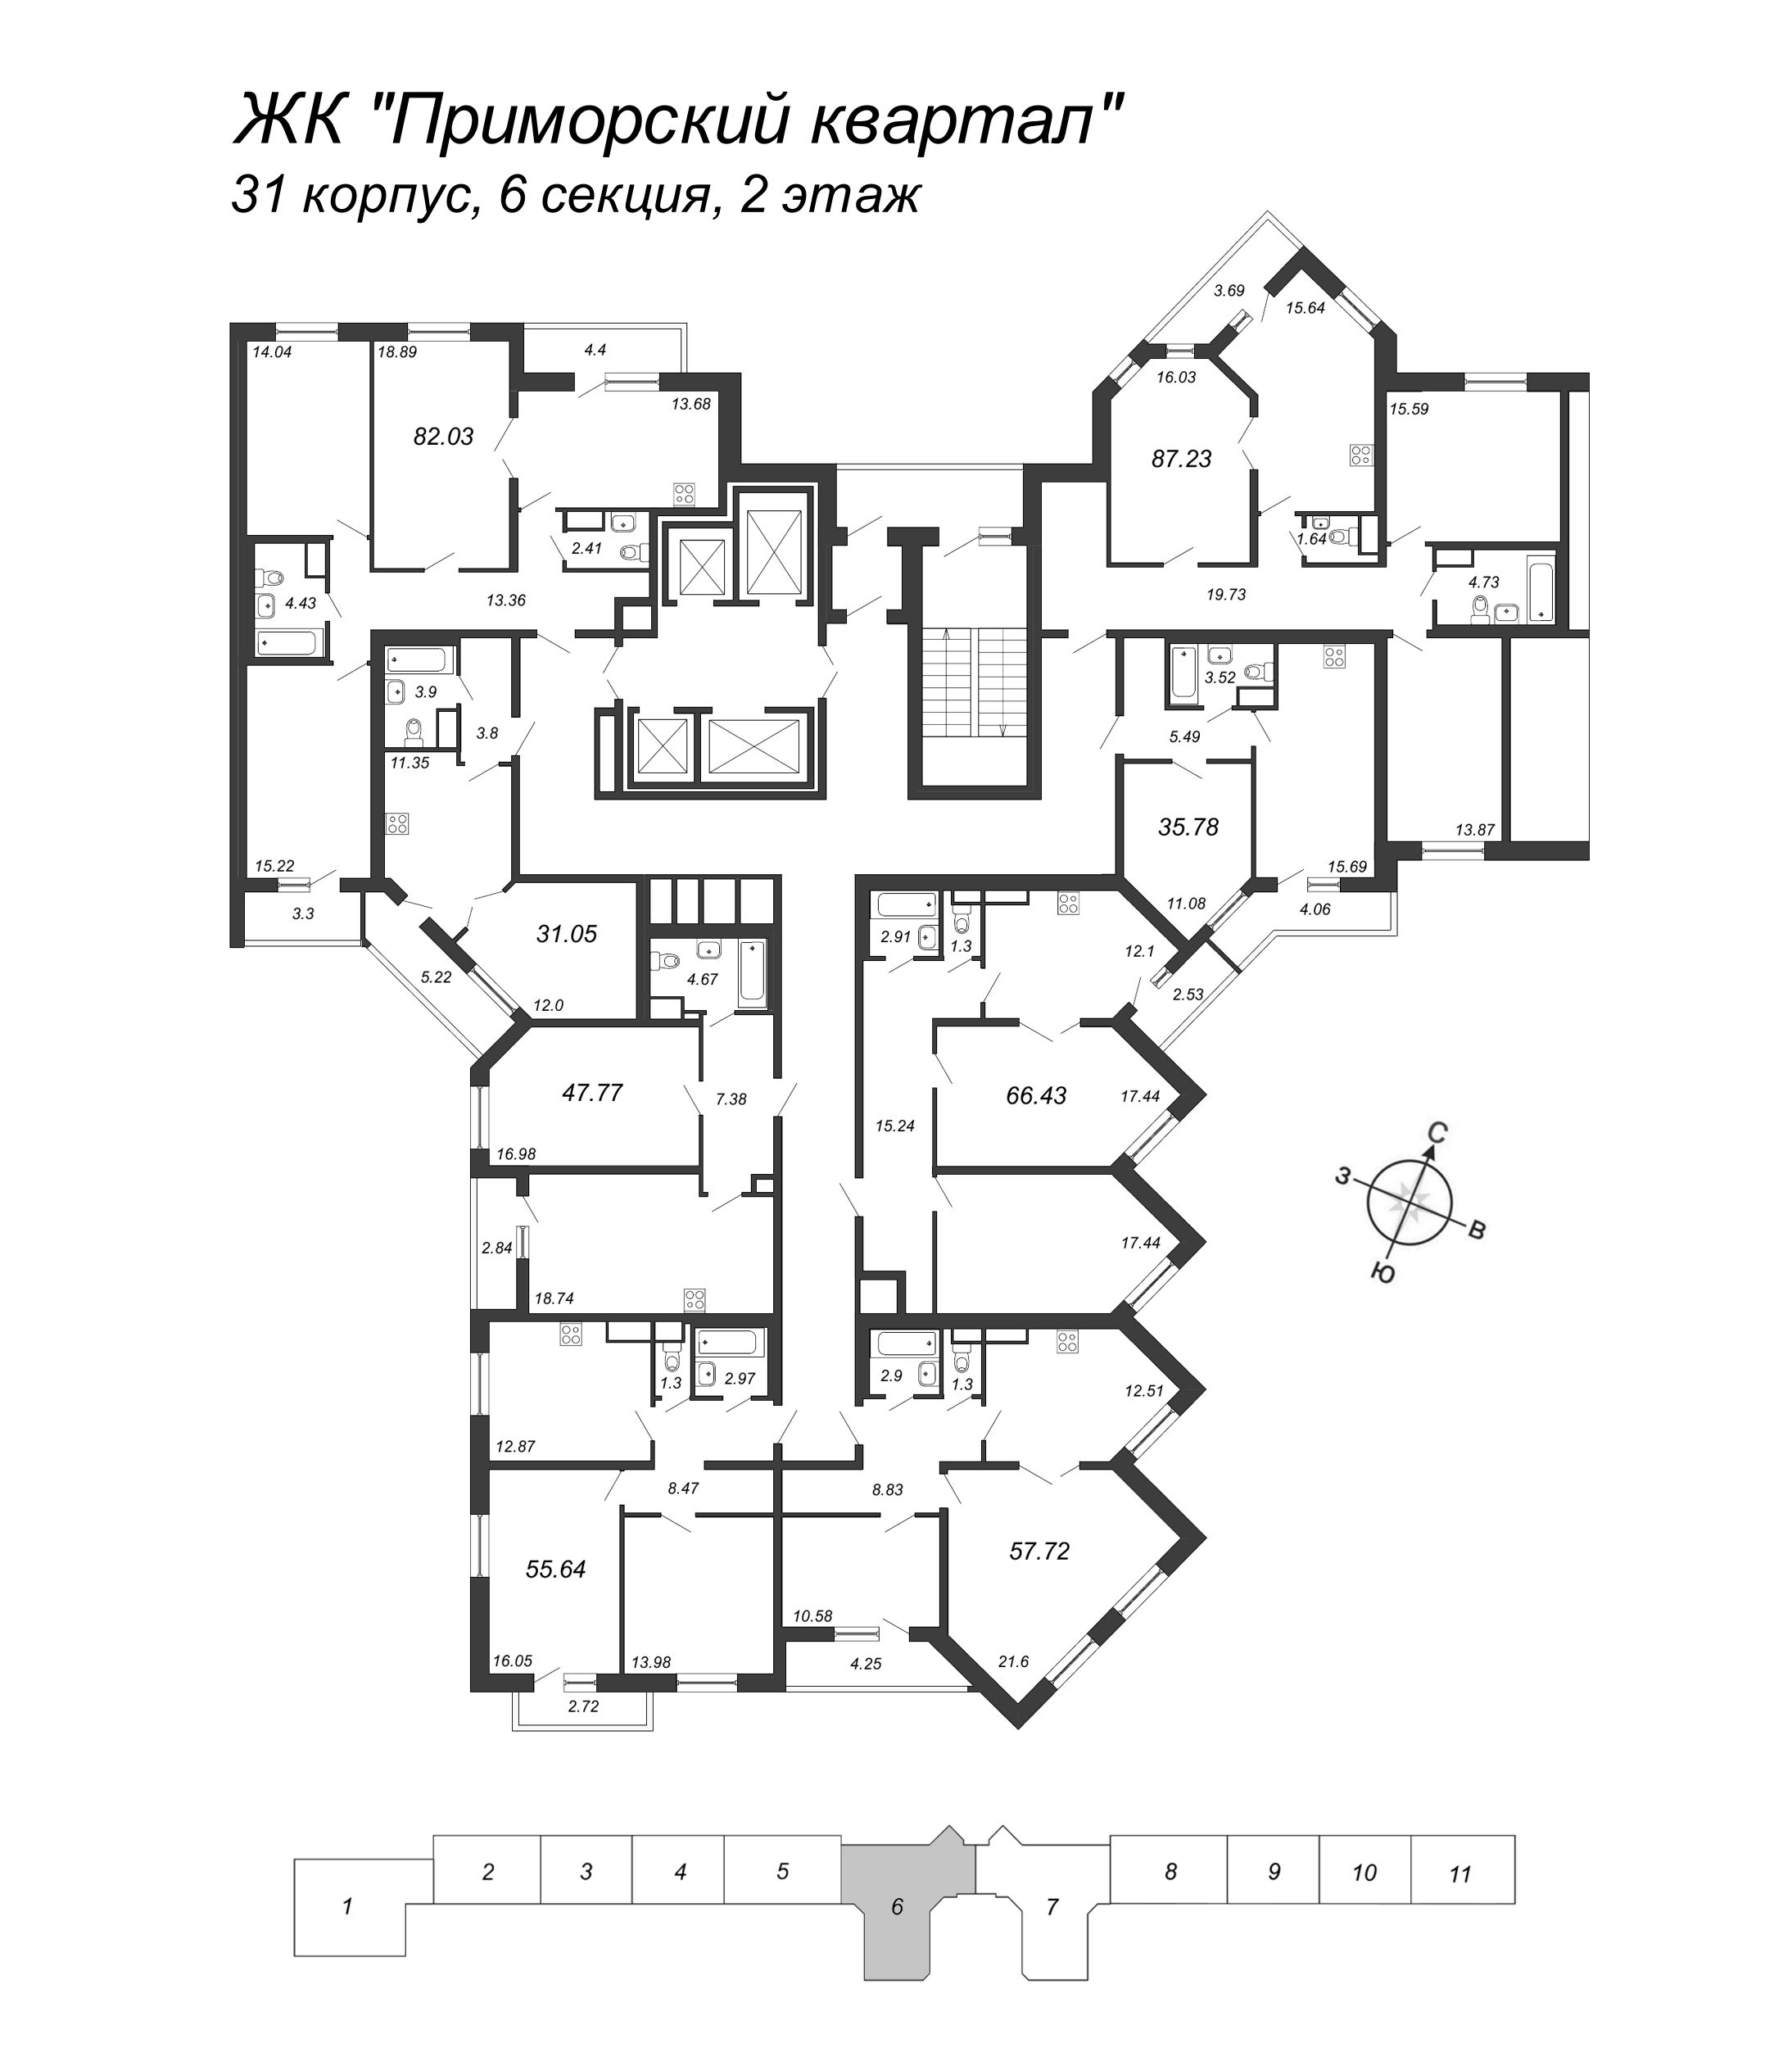 3-комнатная квартира, 82.03 м² в ЖК "Приморский квартал" - планировка этажа